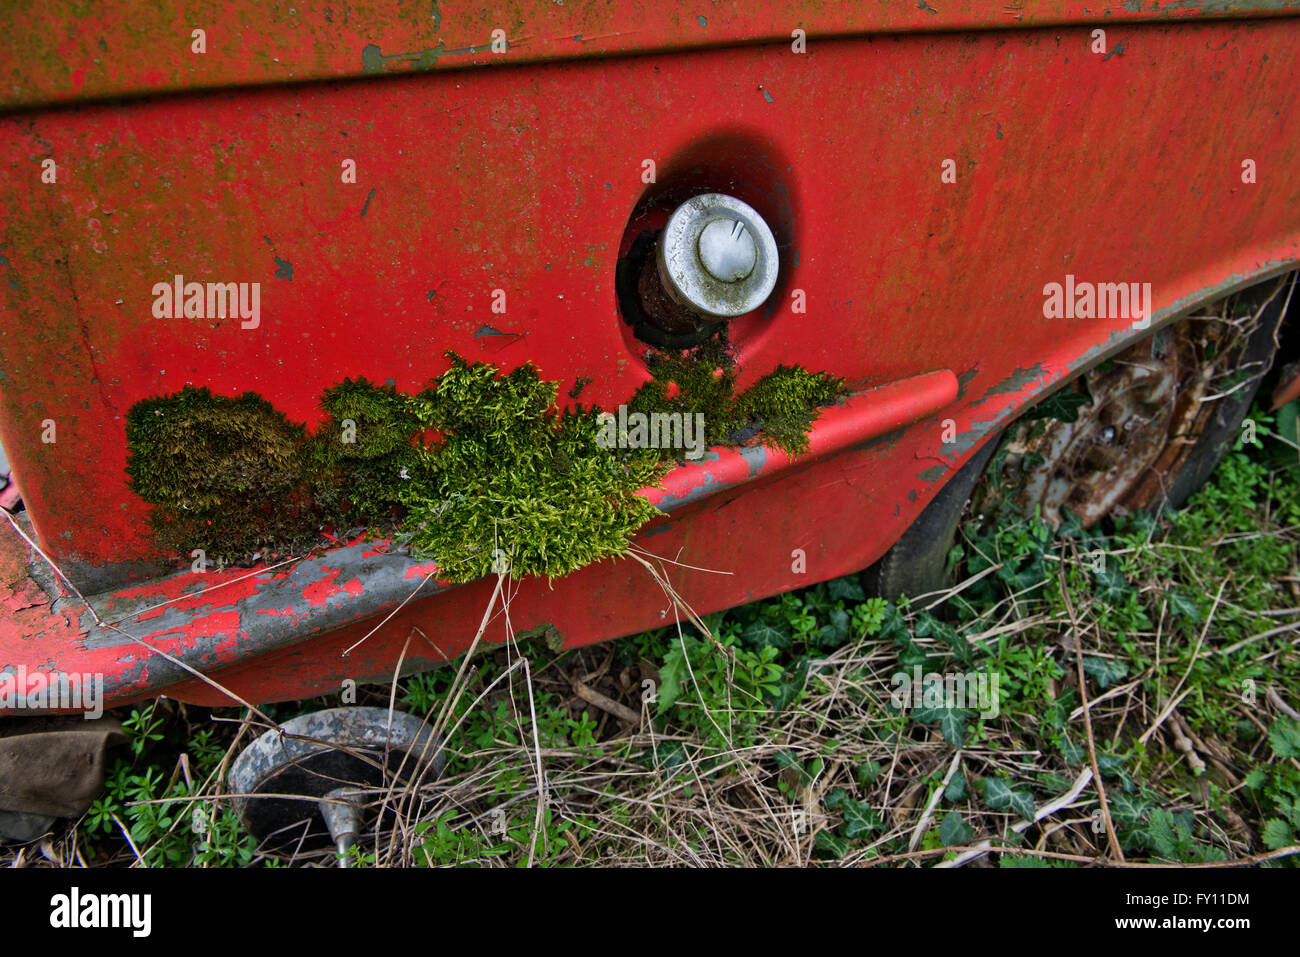 Die Überreste eines Robin Reliant Vintage van langsam verrottet in einem kleinen Bauernhof, der seit 30 Jahren unberührt. Stockfoto